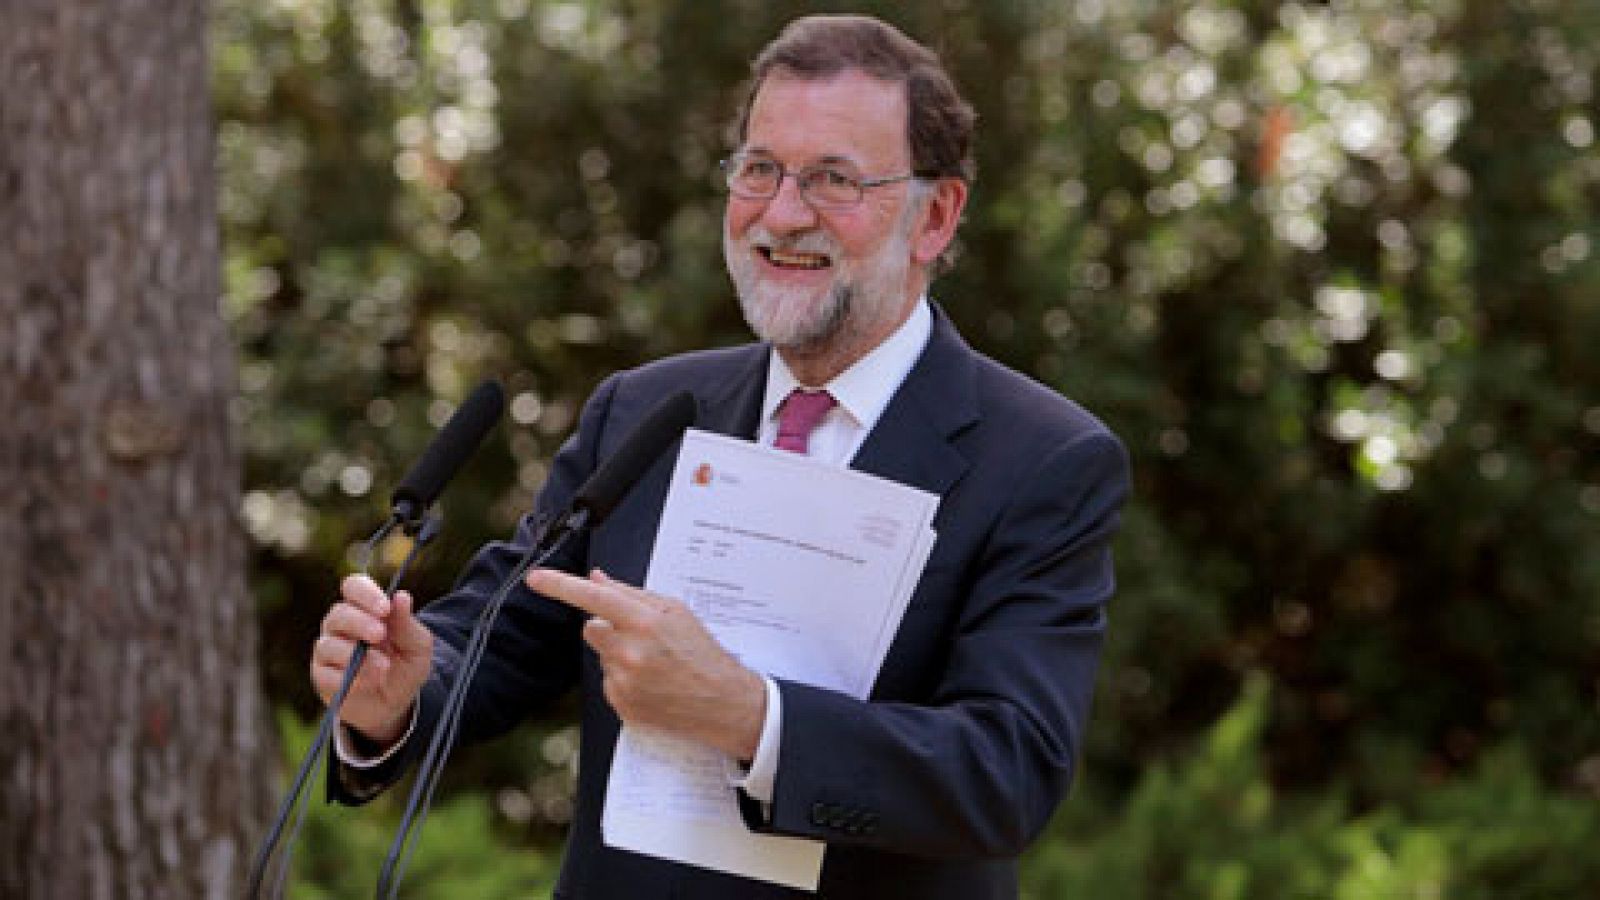 Telediario 1: El presidente del gobierno pide a los españoles sumar y no dividir para conseguir un país mejor | RTVE Play